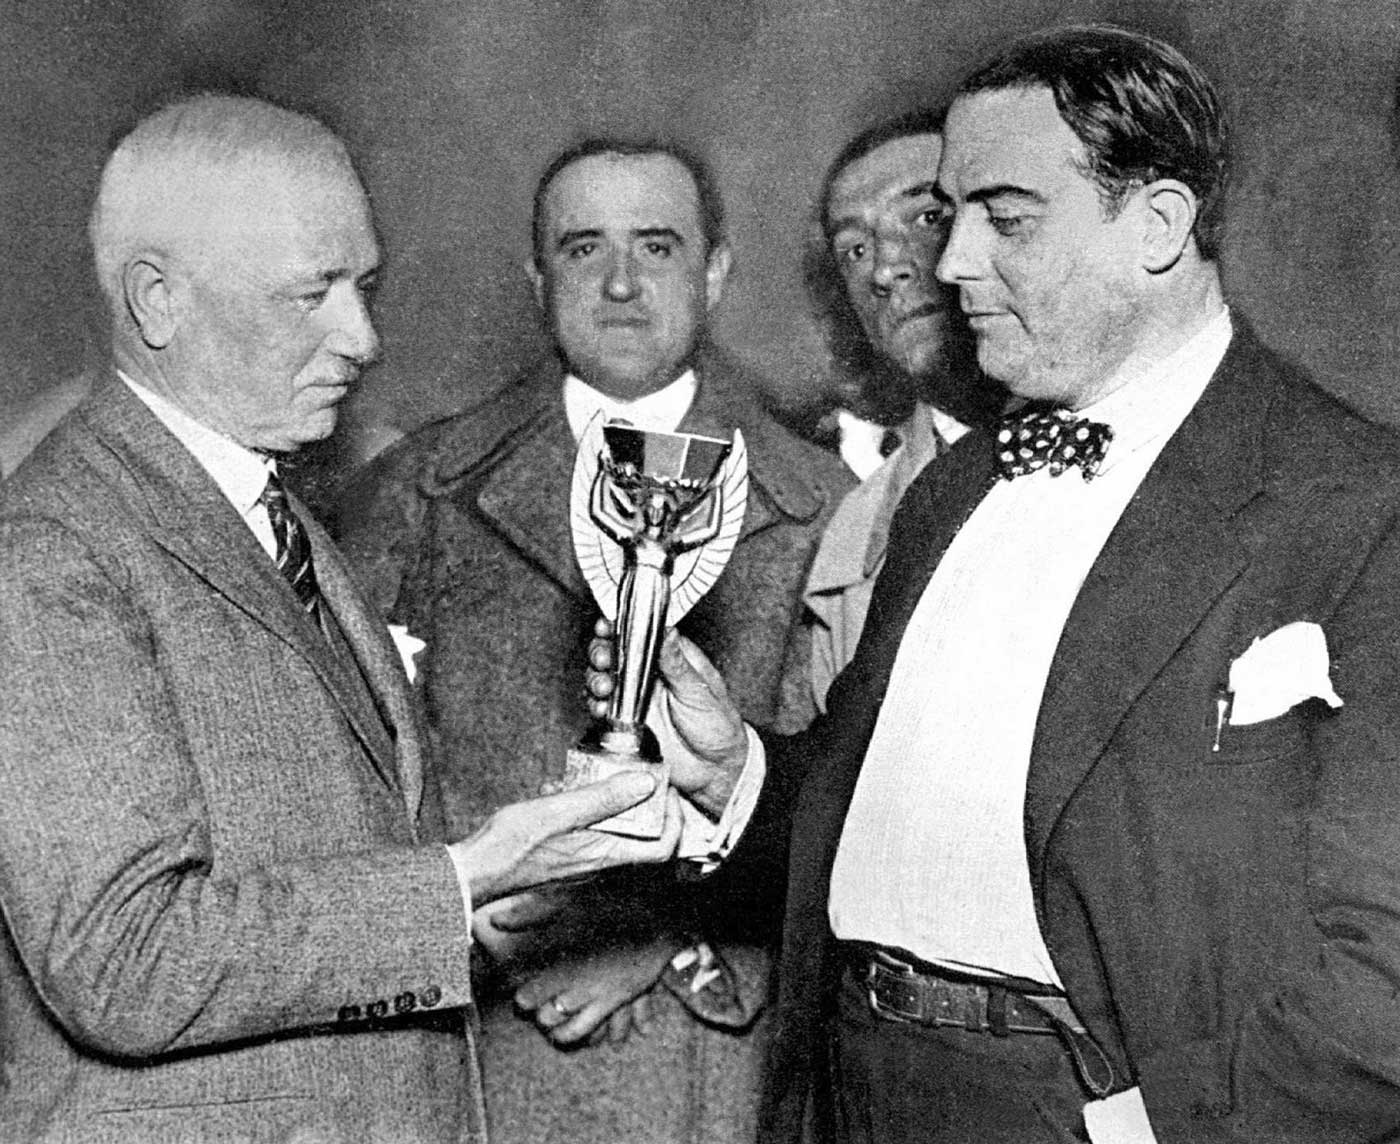 После того, как Международный Олимпийский комитет исключил футбол из своей программы в 1927 году, Жюль Риме (слева), тогдашний президент ФИФА, решил организовать новый международный футбольный турнир в 1930 году в Уругвае, но сохранил четырехлетний формат Олимпийских игр.